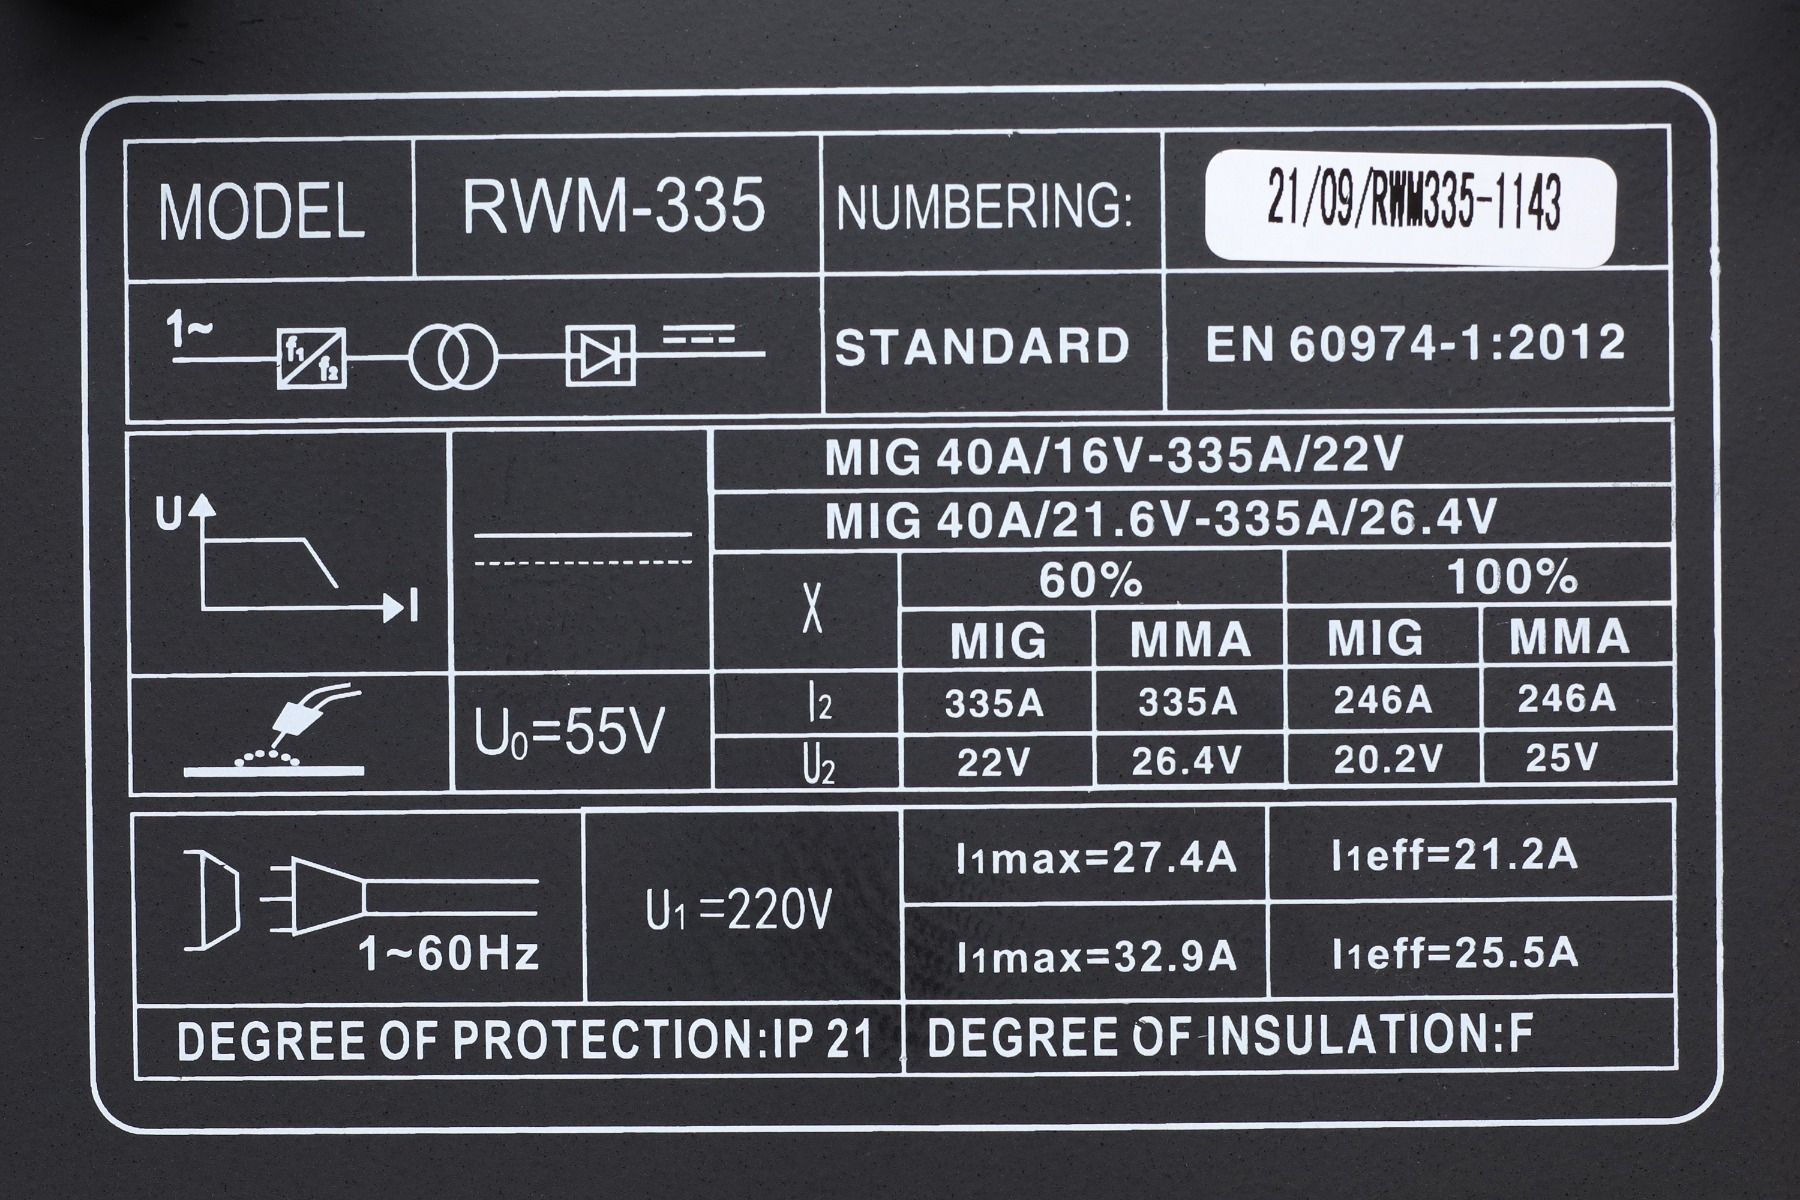 Зварювальний апарат напівавтомат інверторний Rebiner RWM-335, грубий байонет